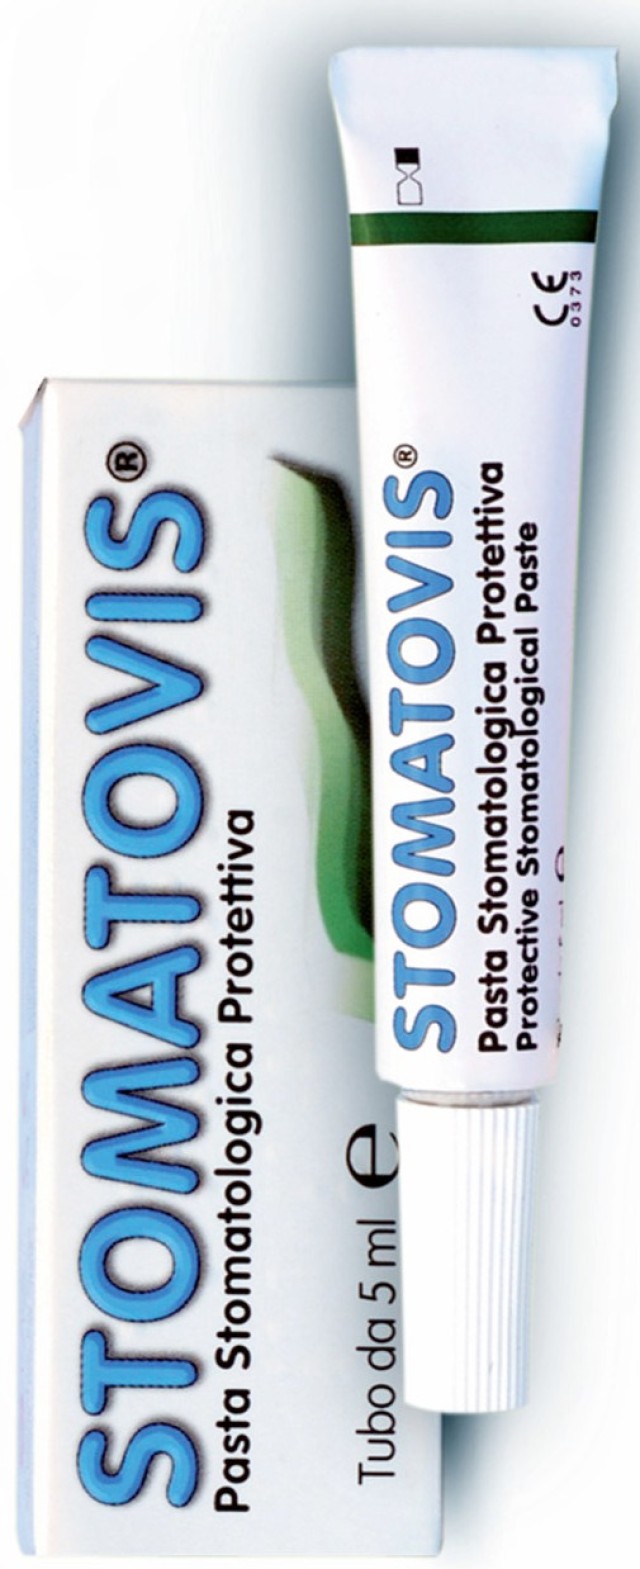 PharmaQ Stomatovis Paste 5ml